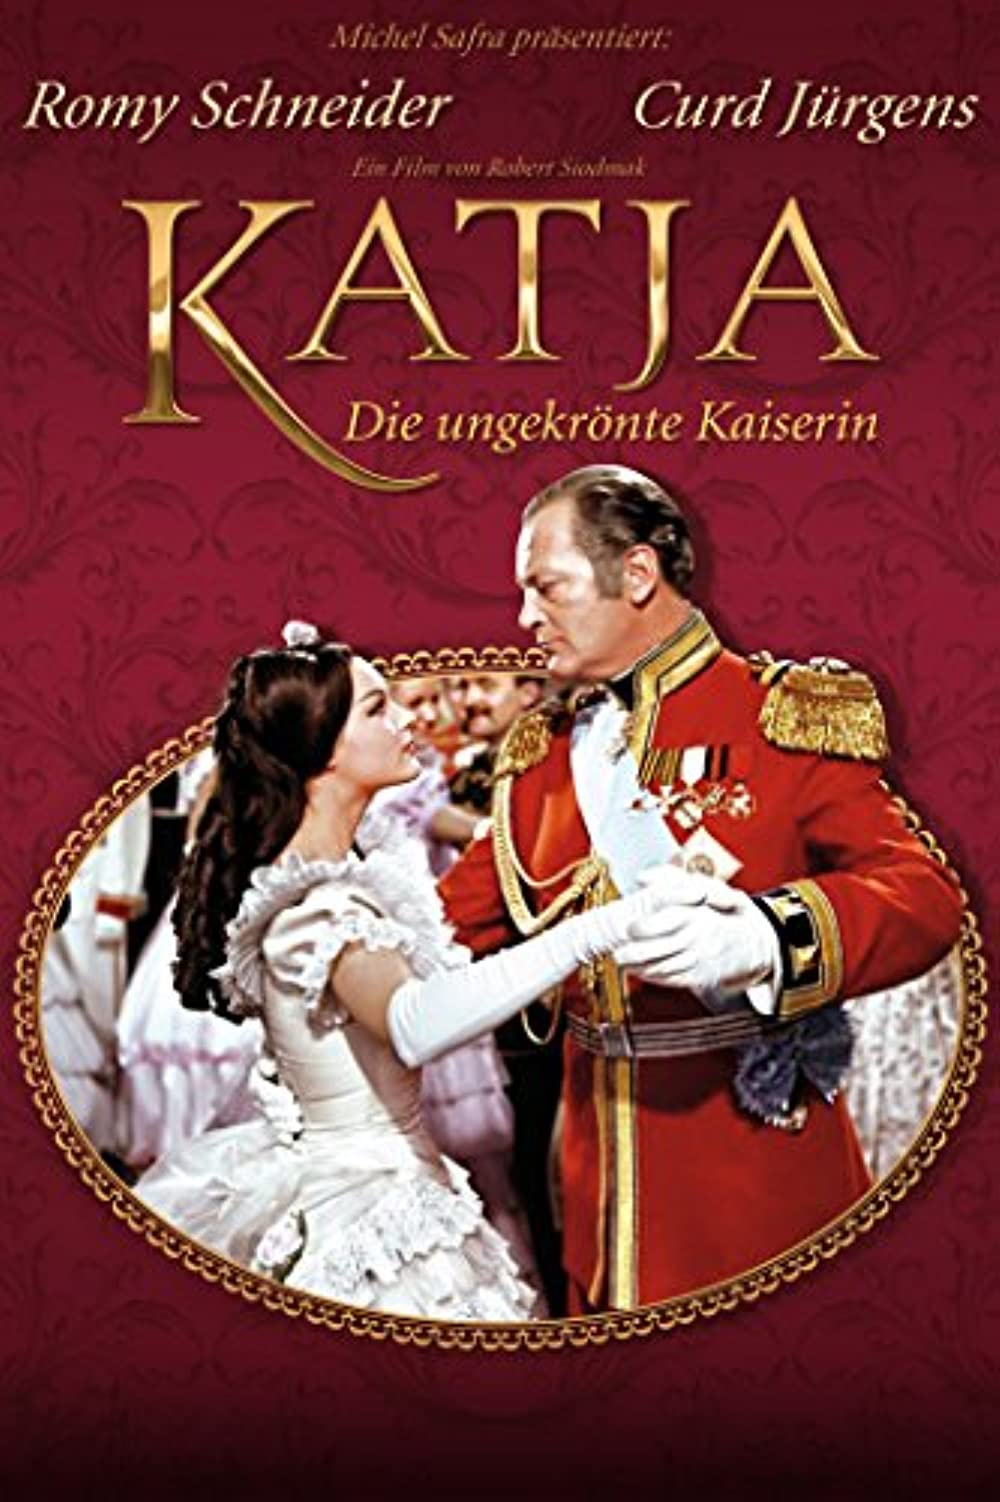 Filmbeschreibung zu Katja, die ungekrönte Kaiserin (1959)